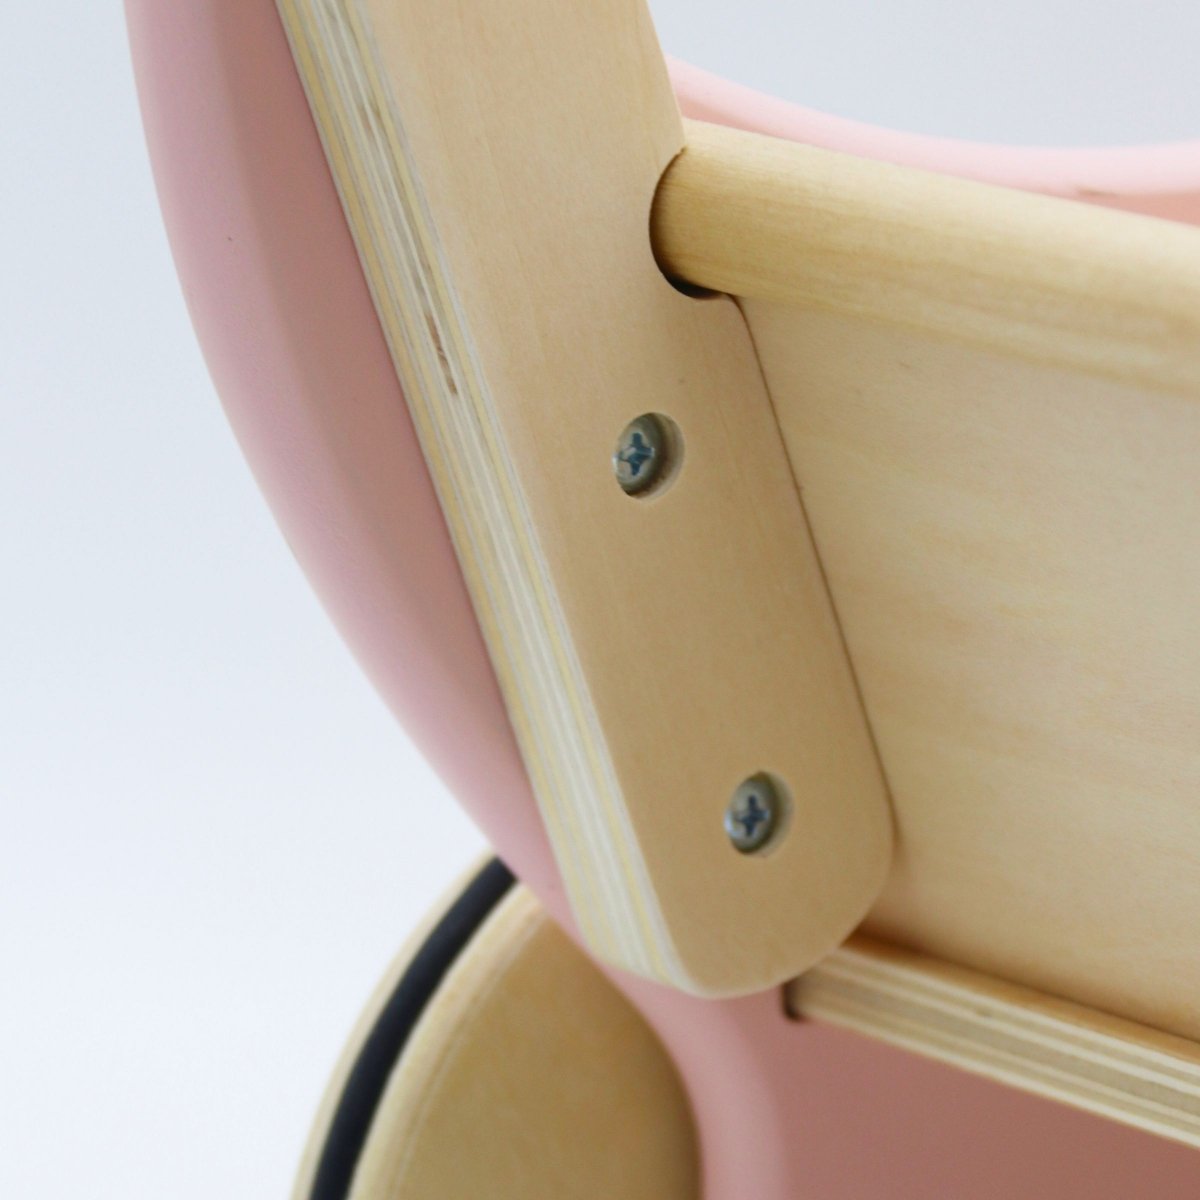 Drewniany wózek dla lalek pchacz różowy